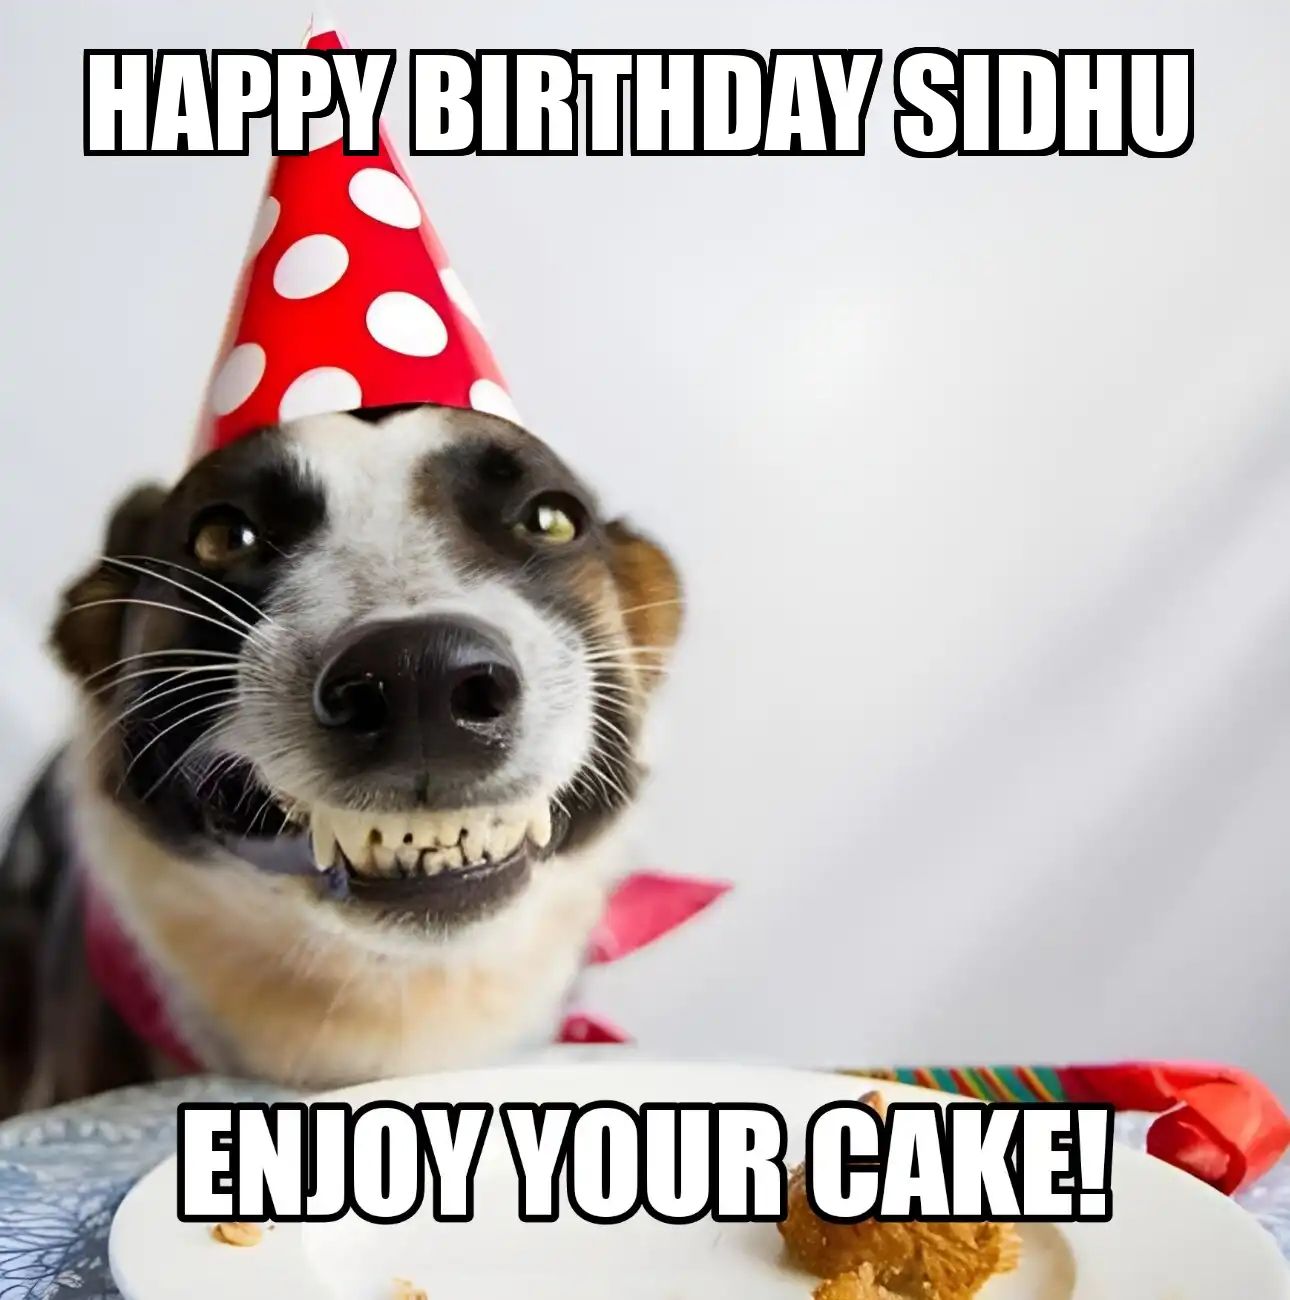 Happy Birthday Sidhu Enjoy Your Cake Dog Meme